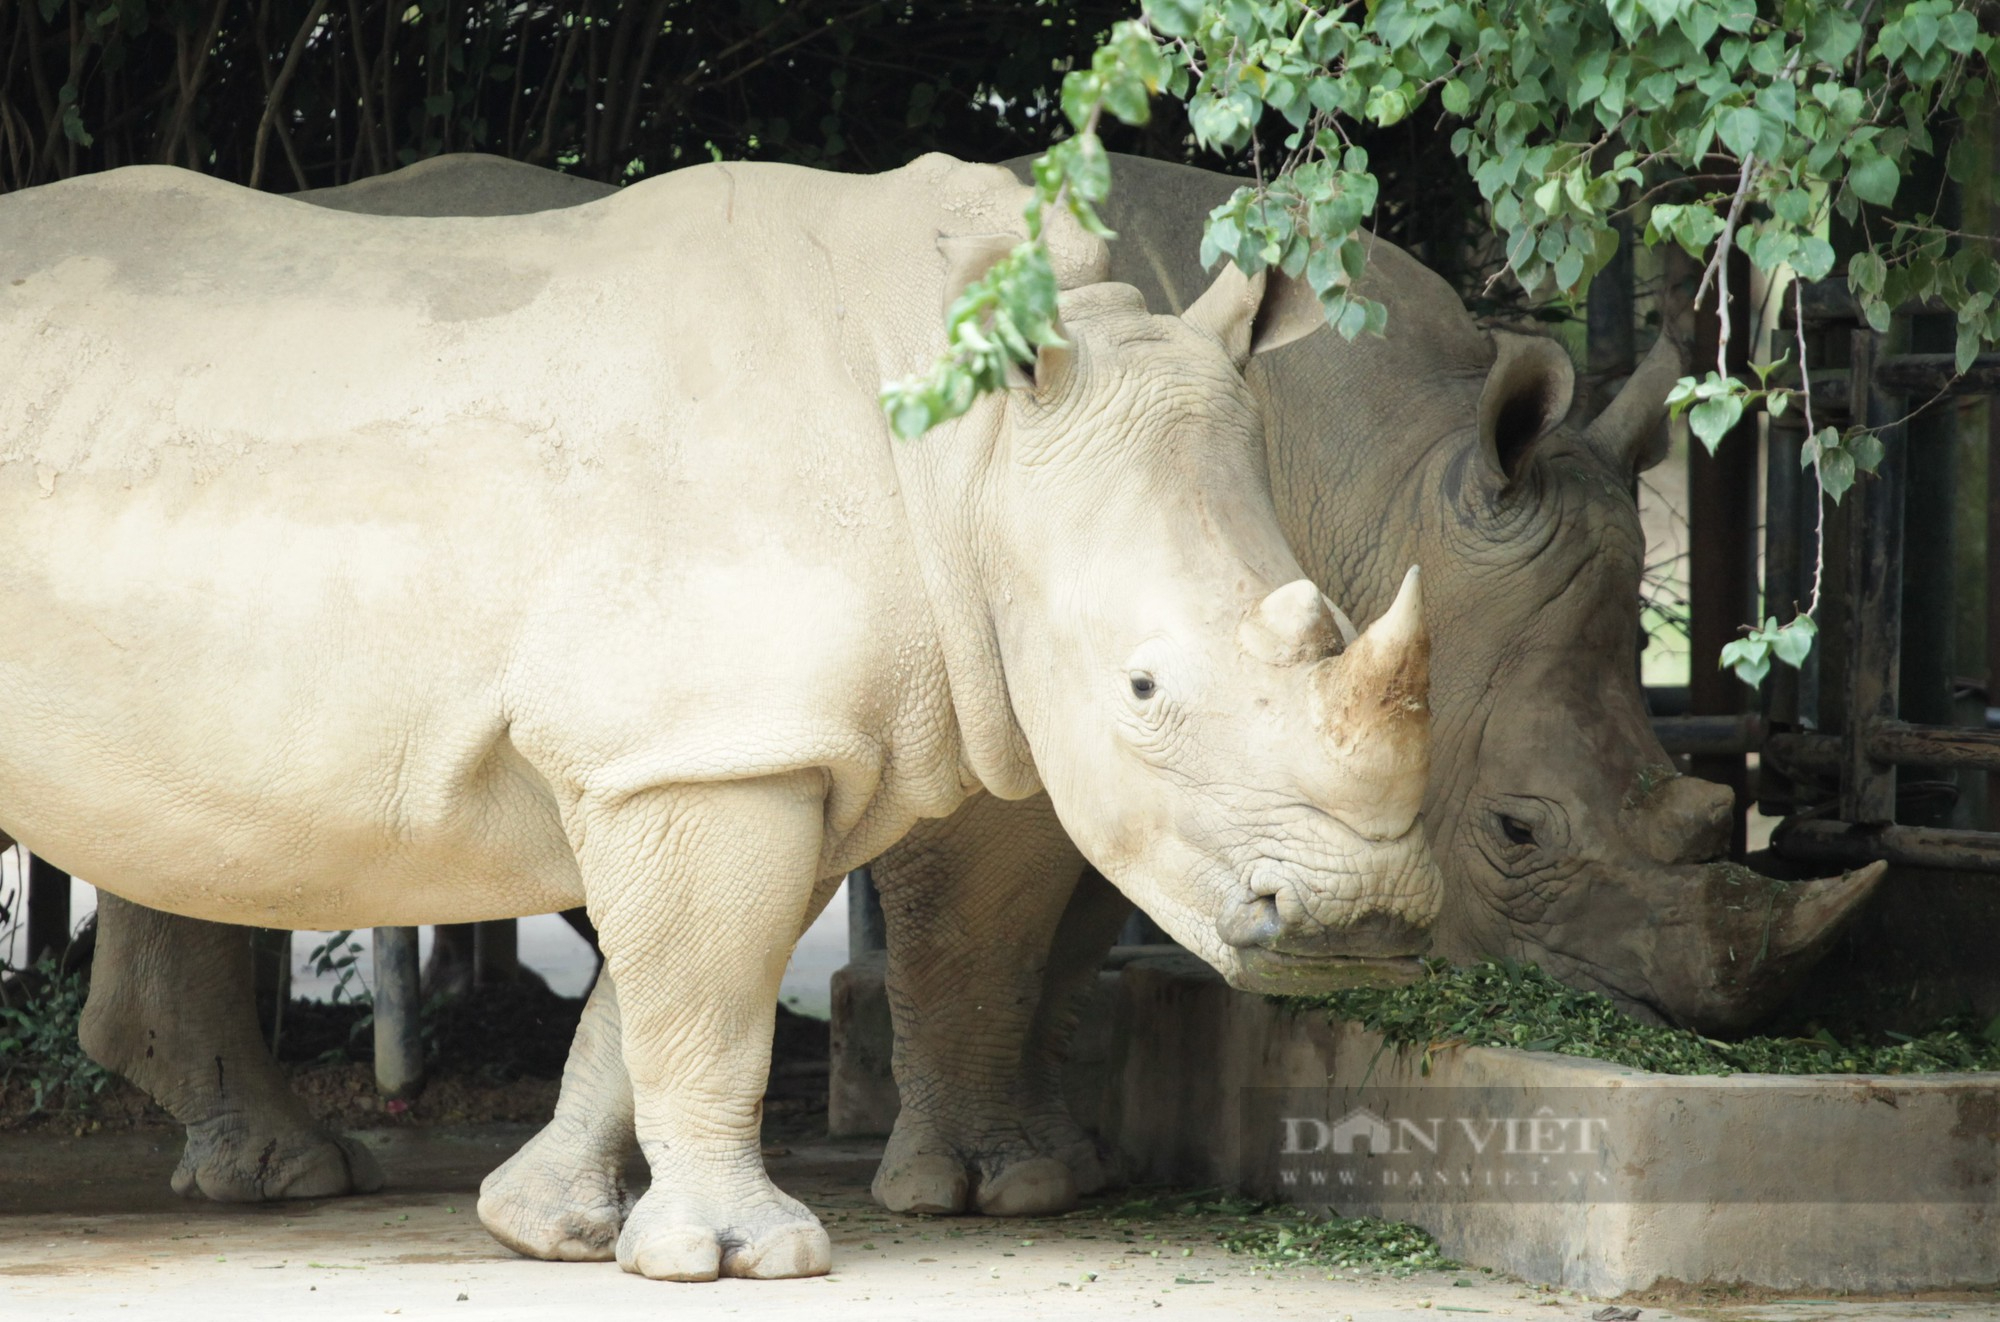 Cận cảnh cuộc sống của những chú tê giác 2 sừng đang được nuôi tại Nghệ An - Ảnh 3.